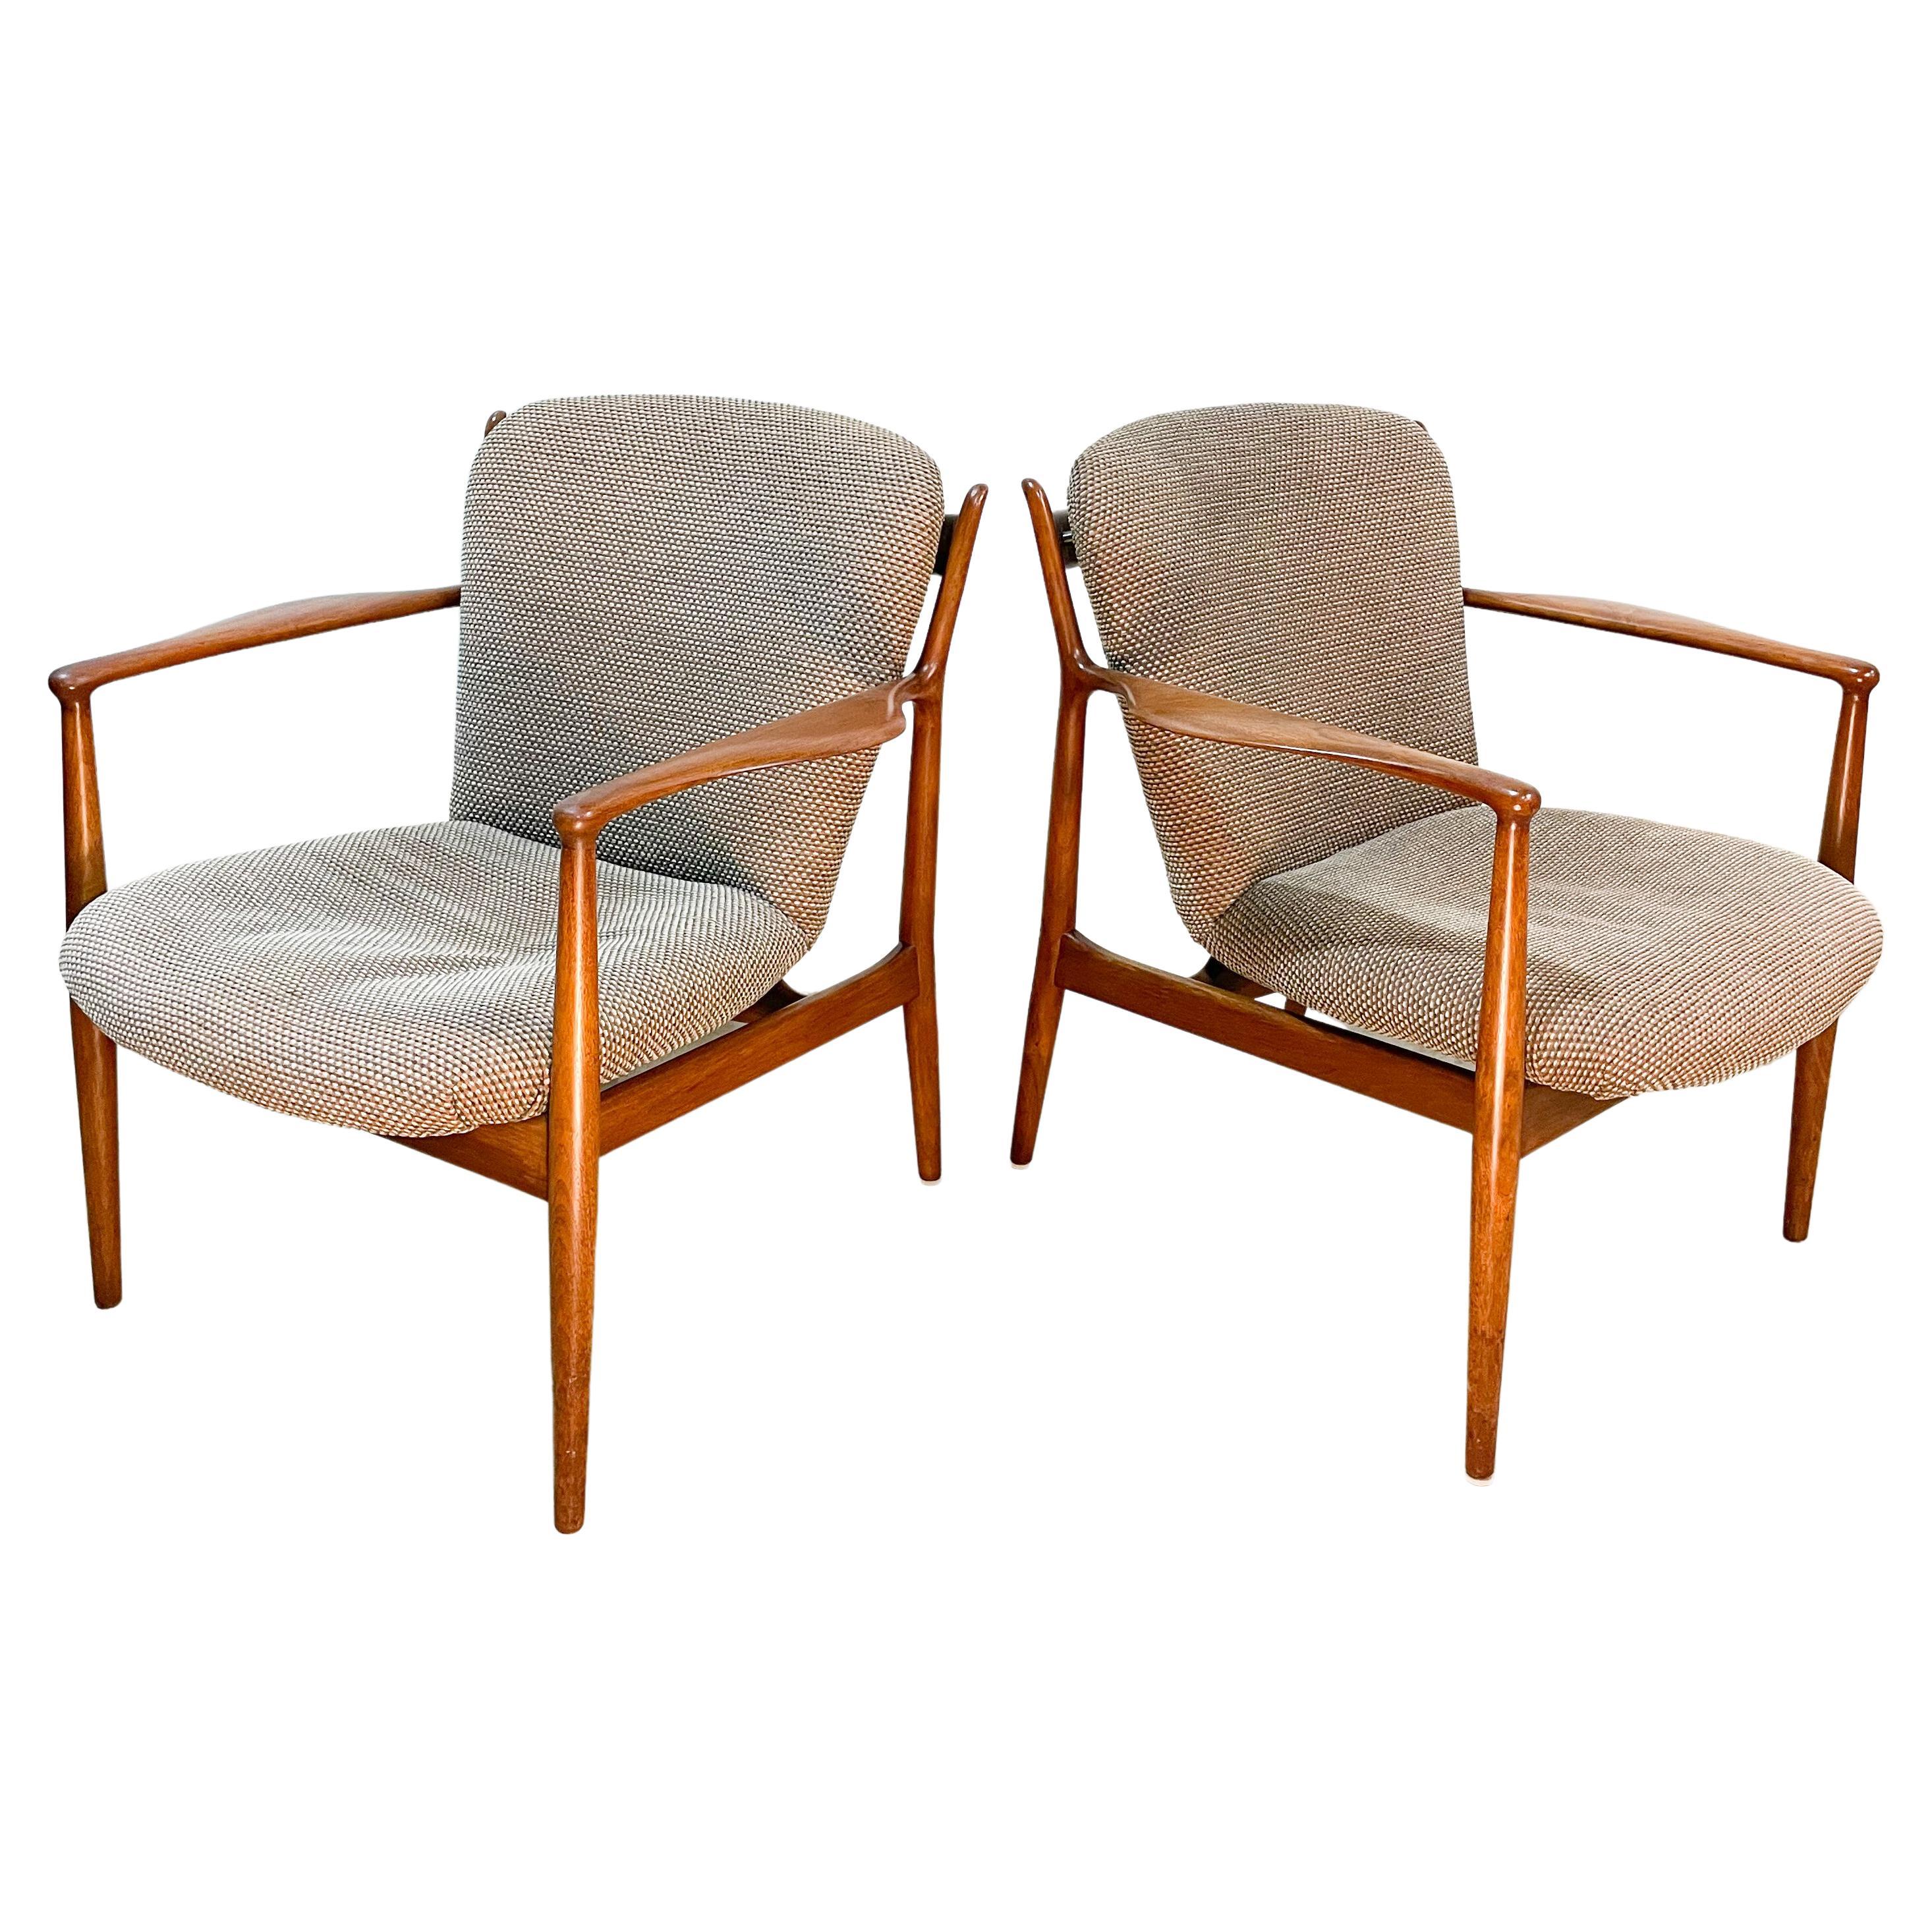 Finn Juhl Delegate Chairs by Baker, 1950s